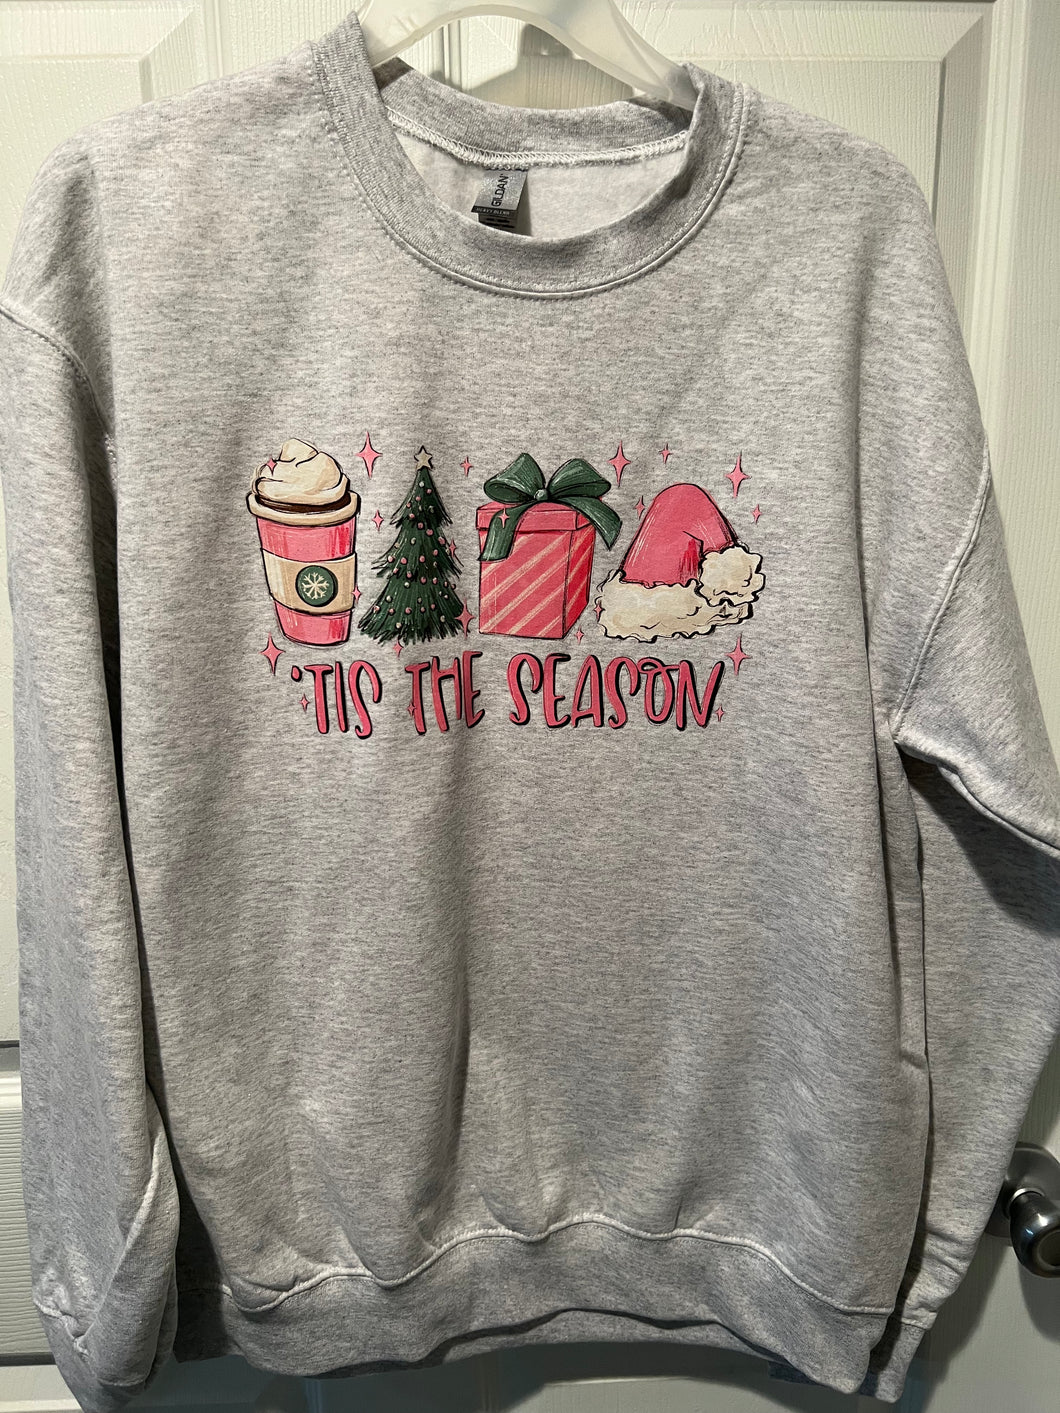 It’s the season sweatshirt - size Medium